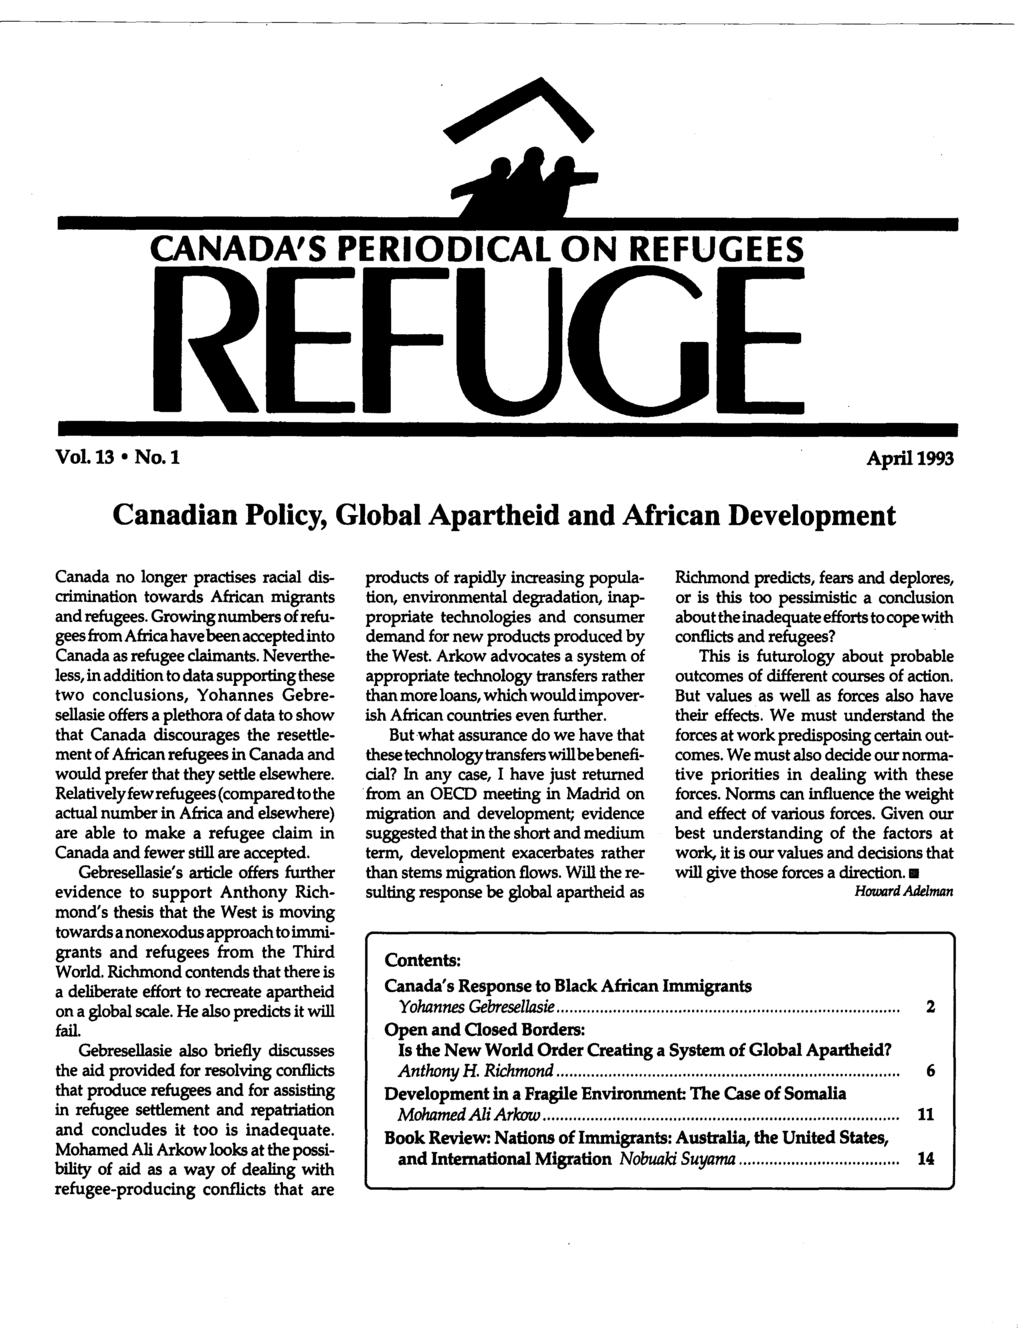 CANADA'S PERIODICAL ON REFUGEES REFUGE Vol. 13 No.